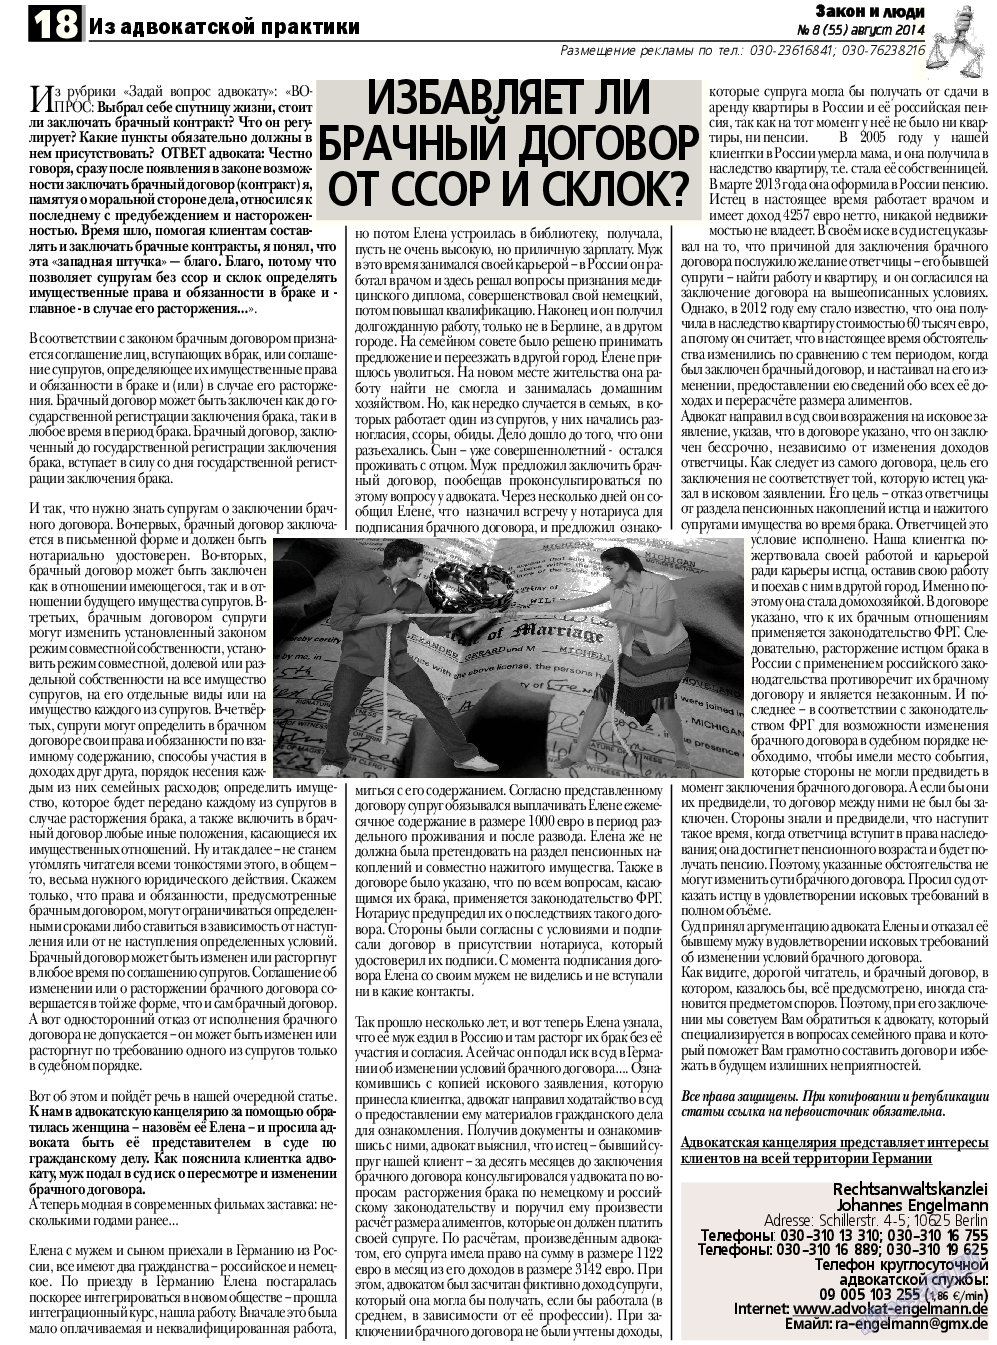 Закон и люди, газета. 2014 №8 стр.18